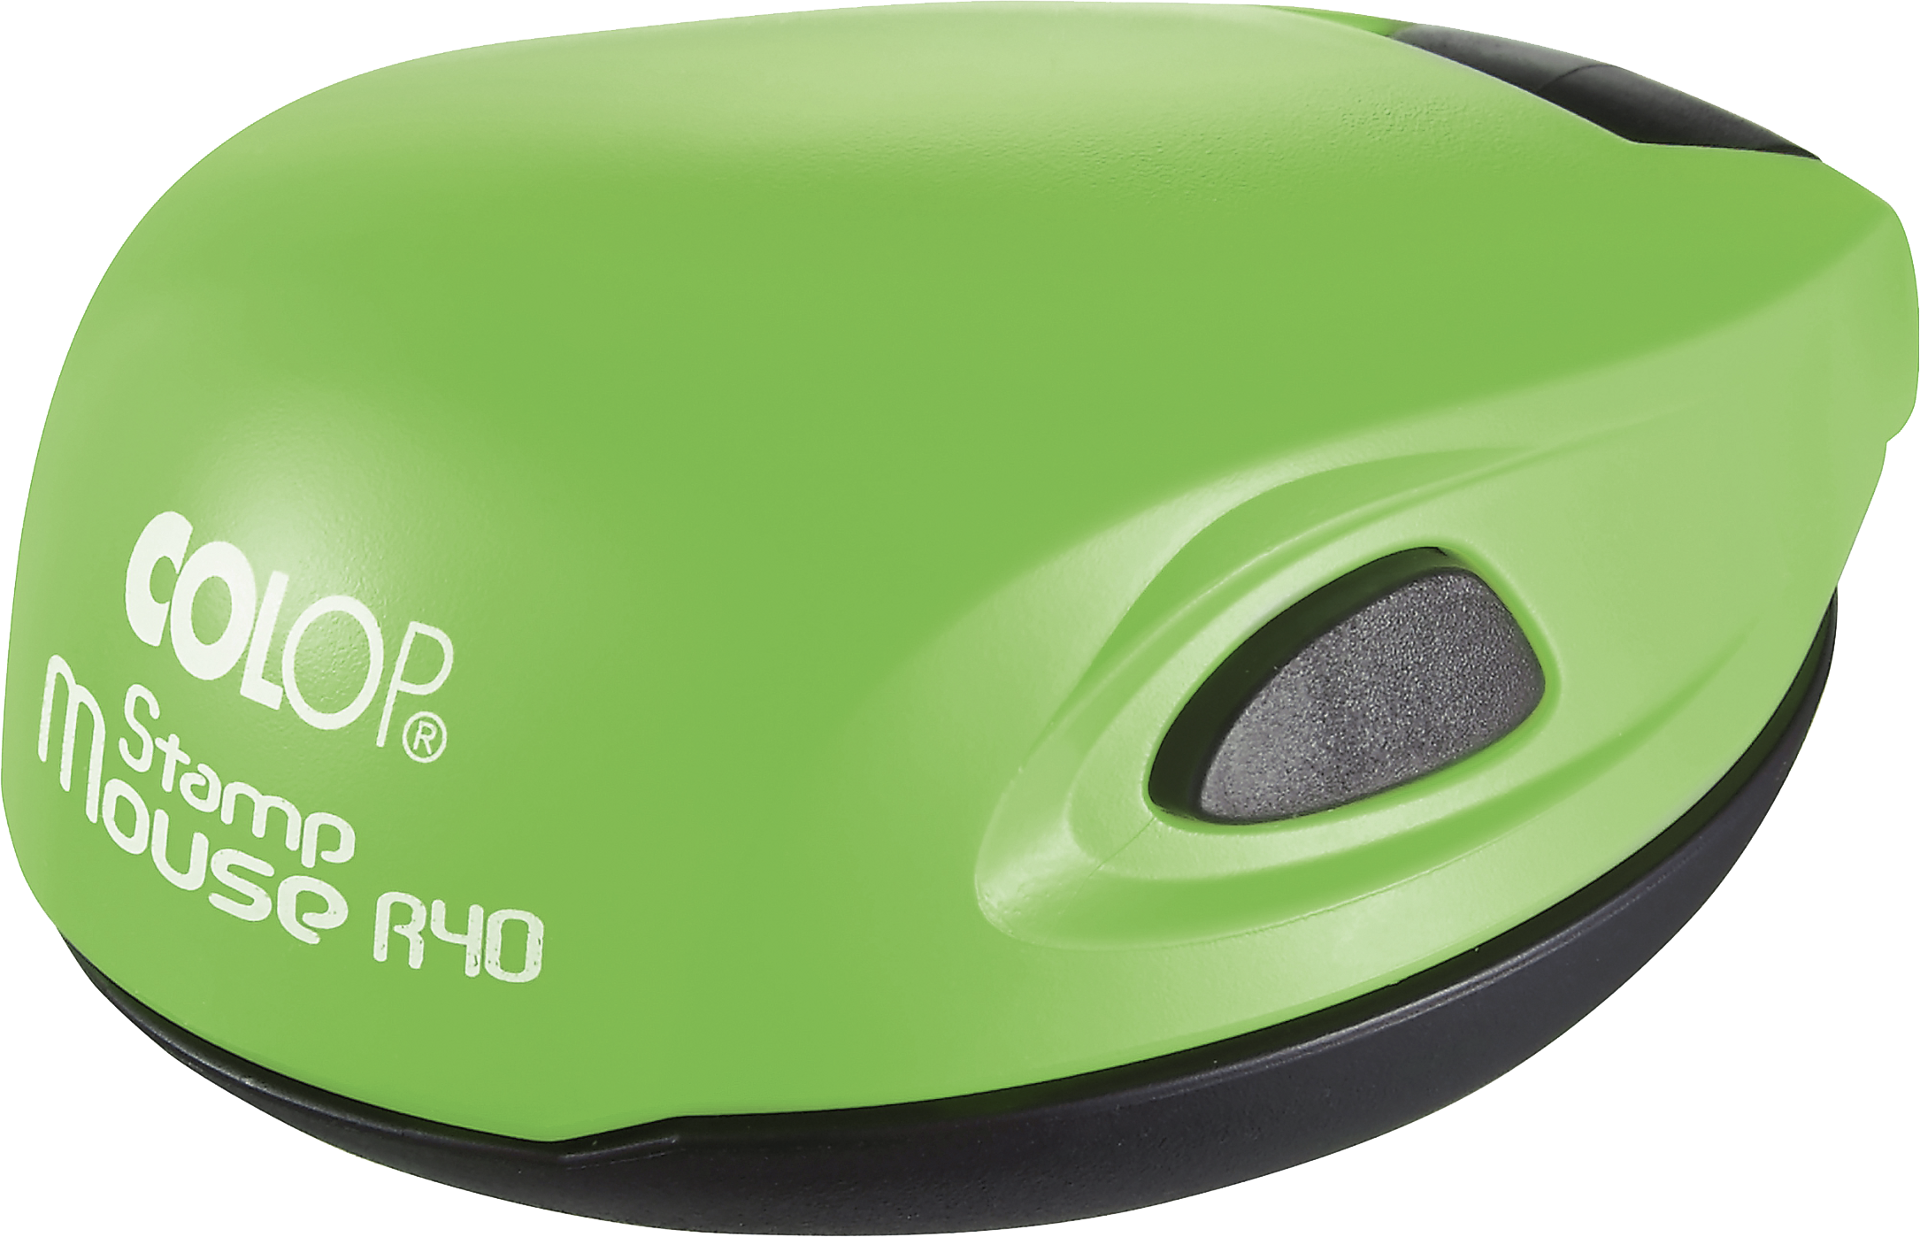 Изготовление новой печати на оснастке Colop Mouse ярко-зеленый